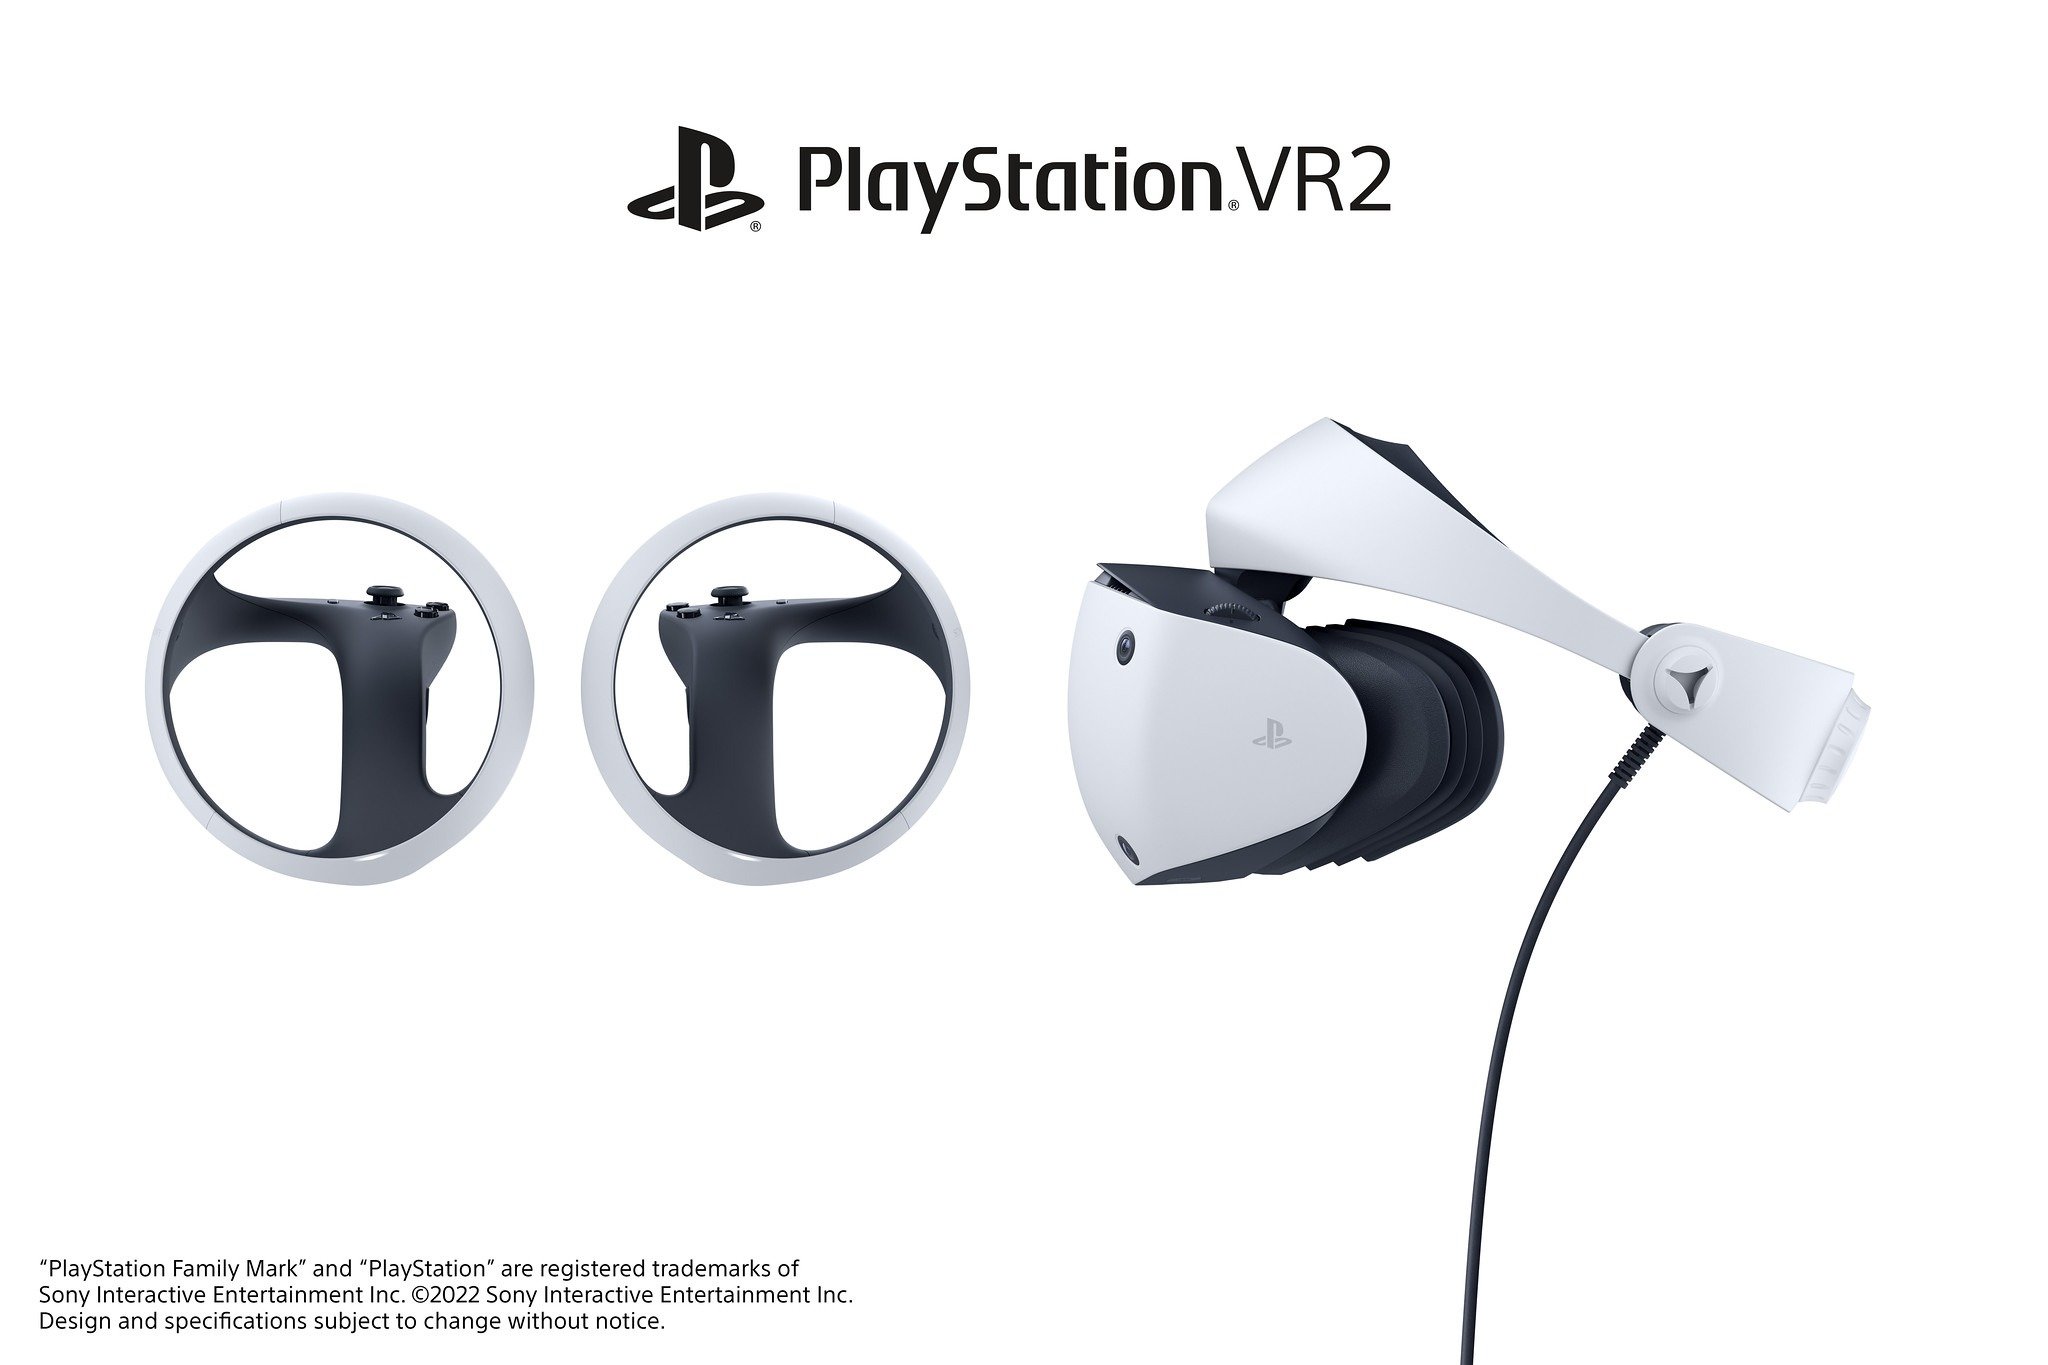 Visuel du PlayStation VR 2.